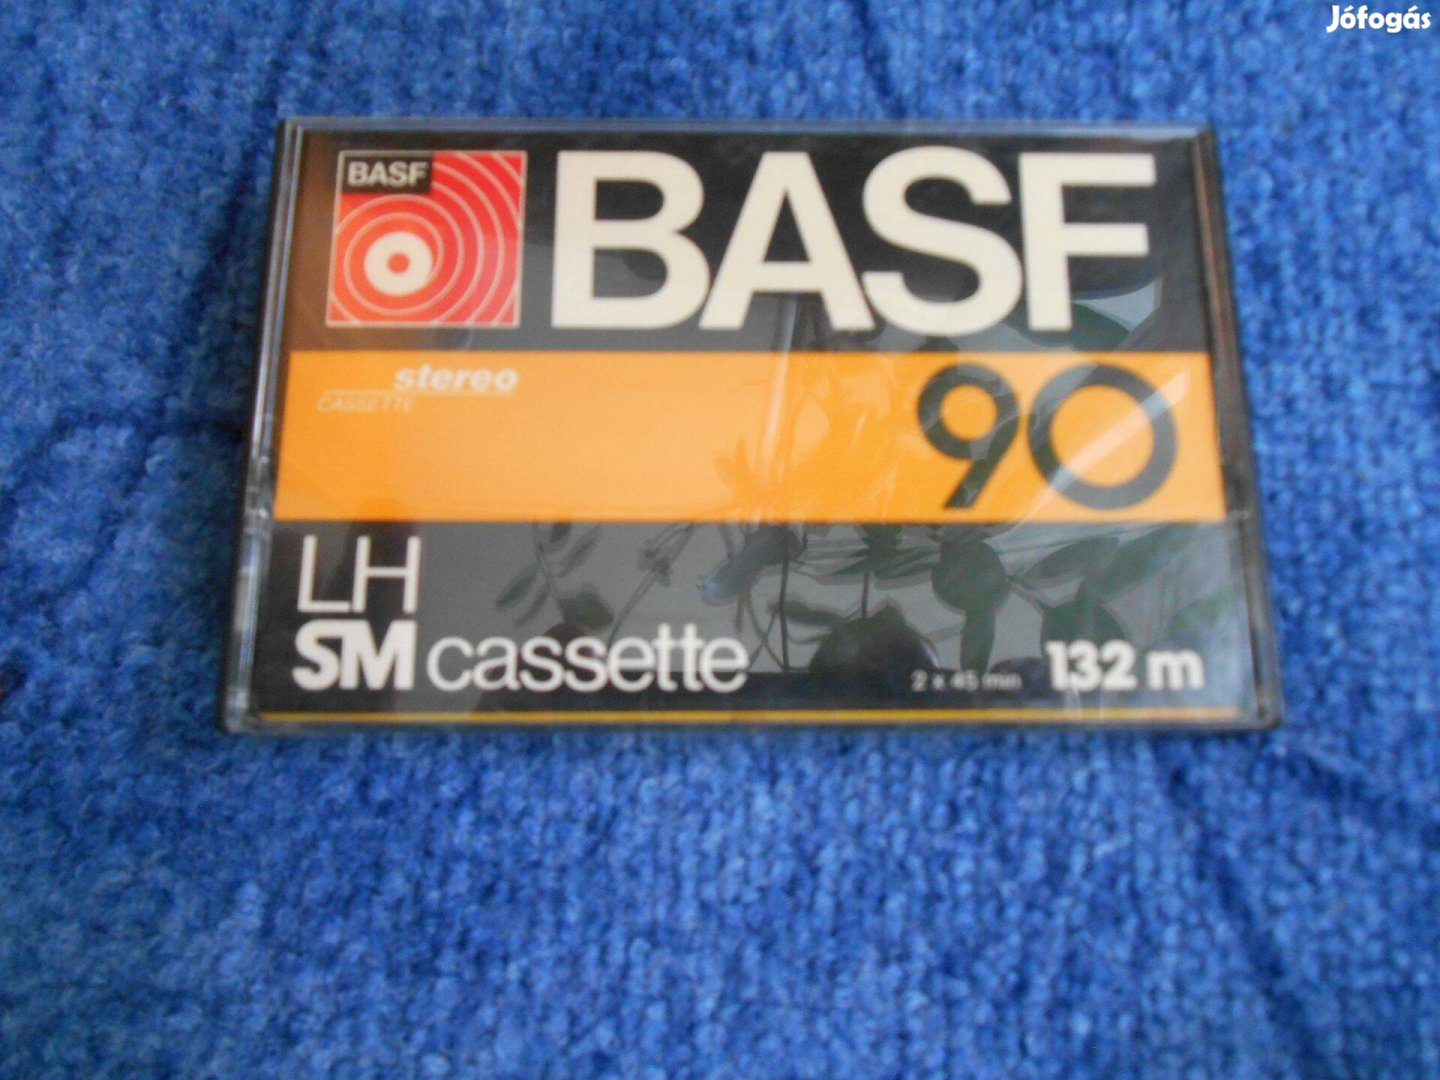 BASF LH SM 90 kazetta